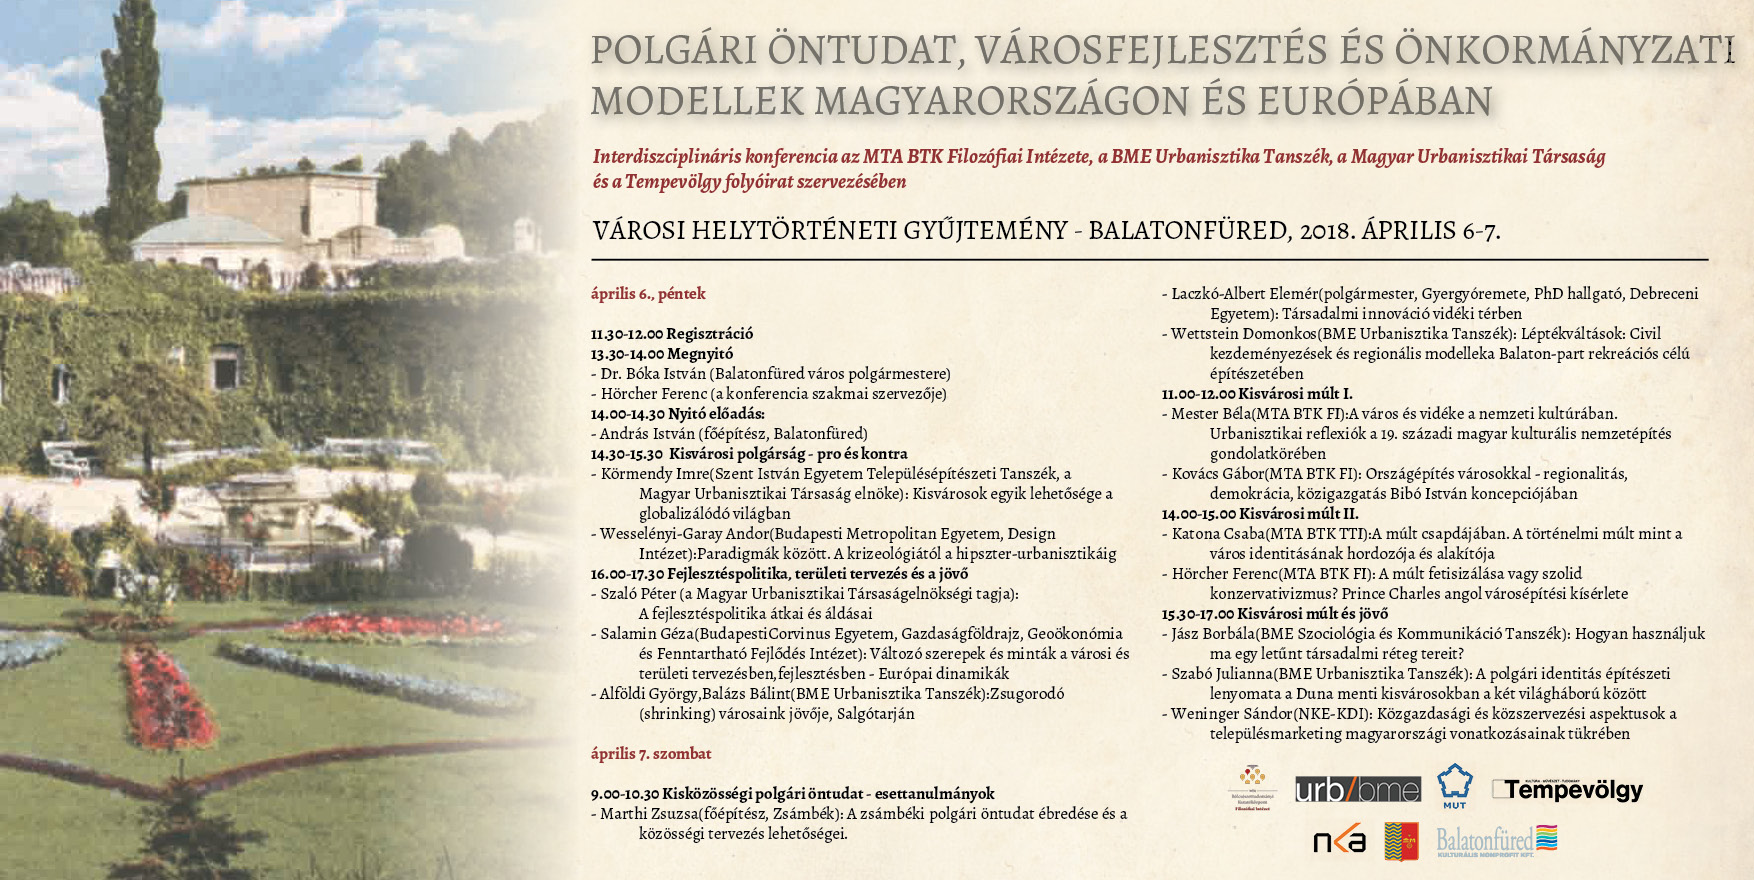 Polgári öntudat, városfejlesztés és önkormányzati modellek Magyarországon és Európában: a Filozófiai Intézet konferenciája Balatonfüreden